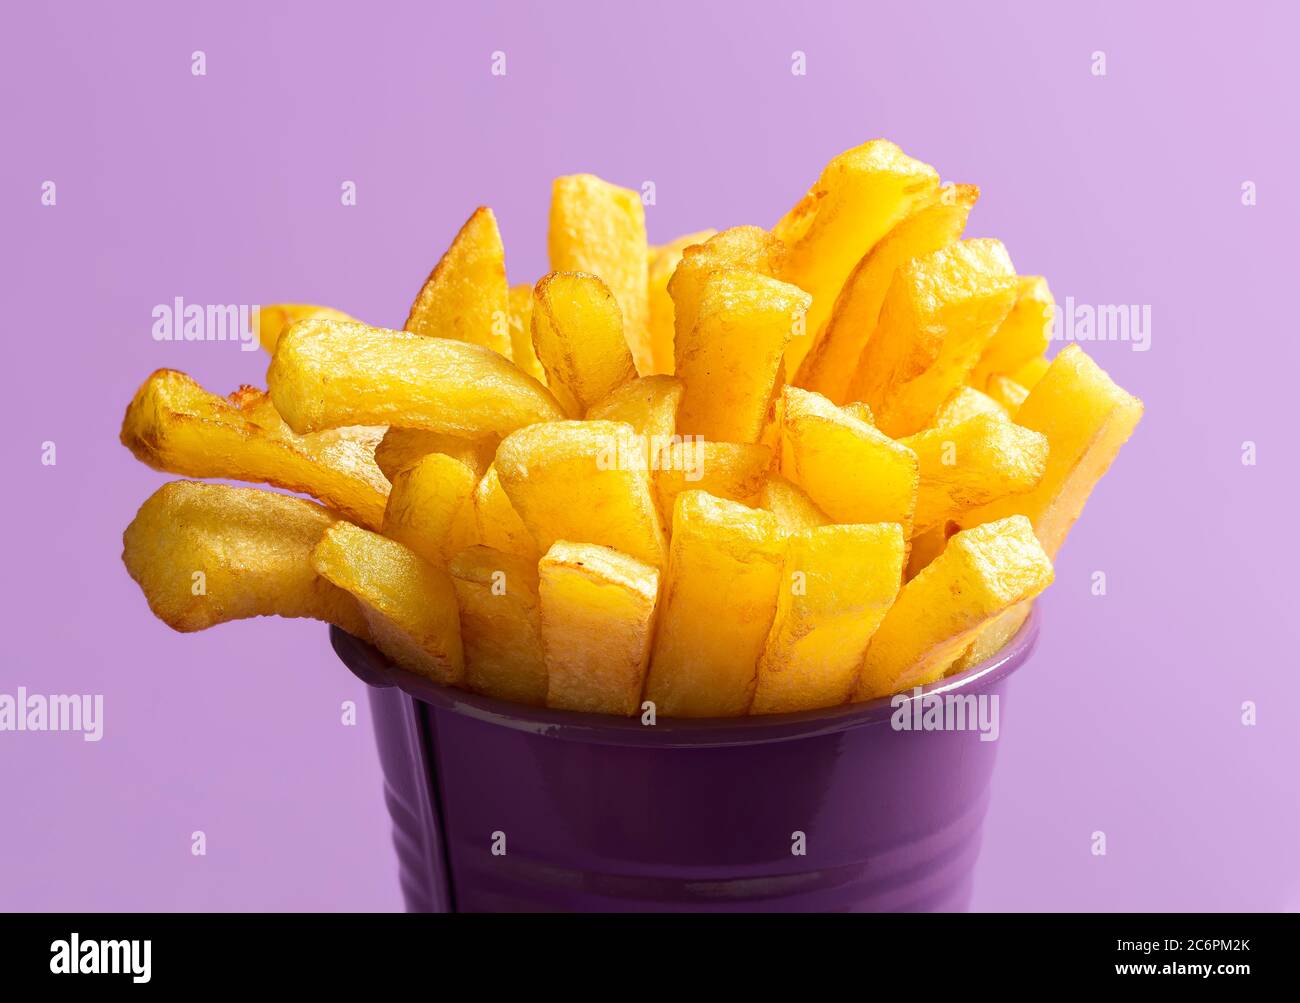 Hausgemachte pommes Frites aus der Nähe, isoliert auf violettem Hintergrund. Frittierte Kartoffeln, Fingerchips, Makrobild. Goldene pommes in einem lila Eimer Stockfoto